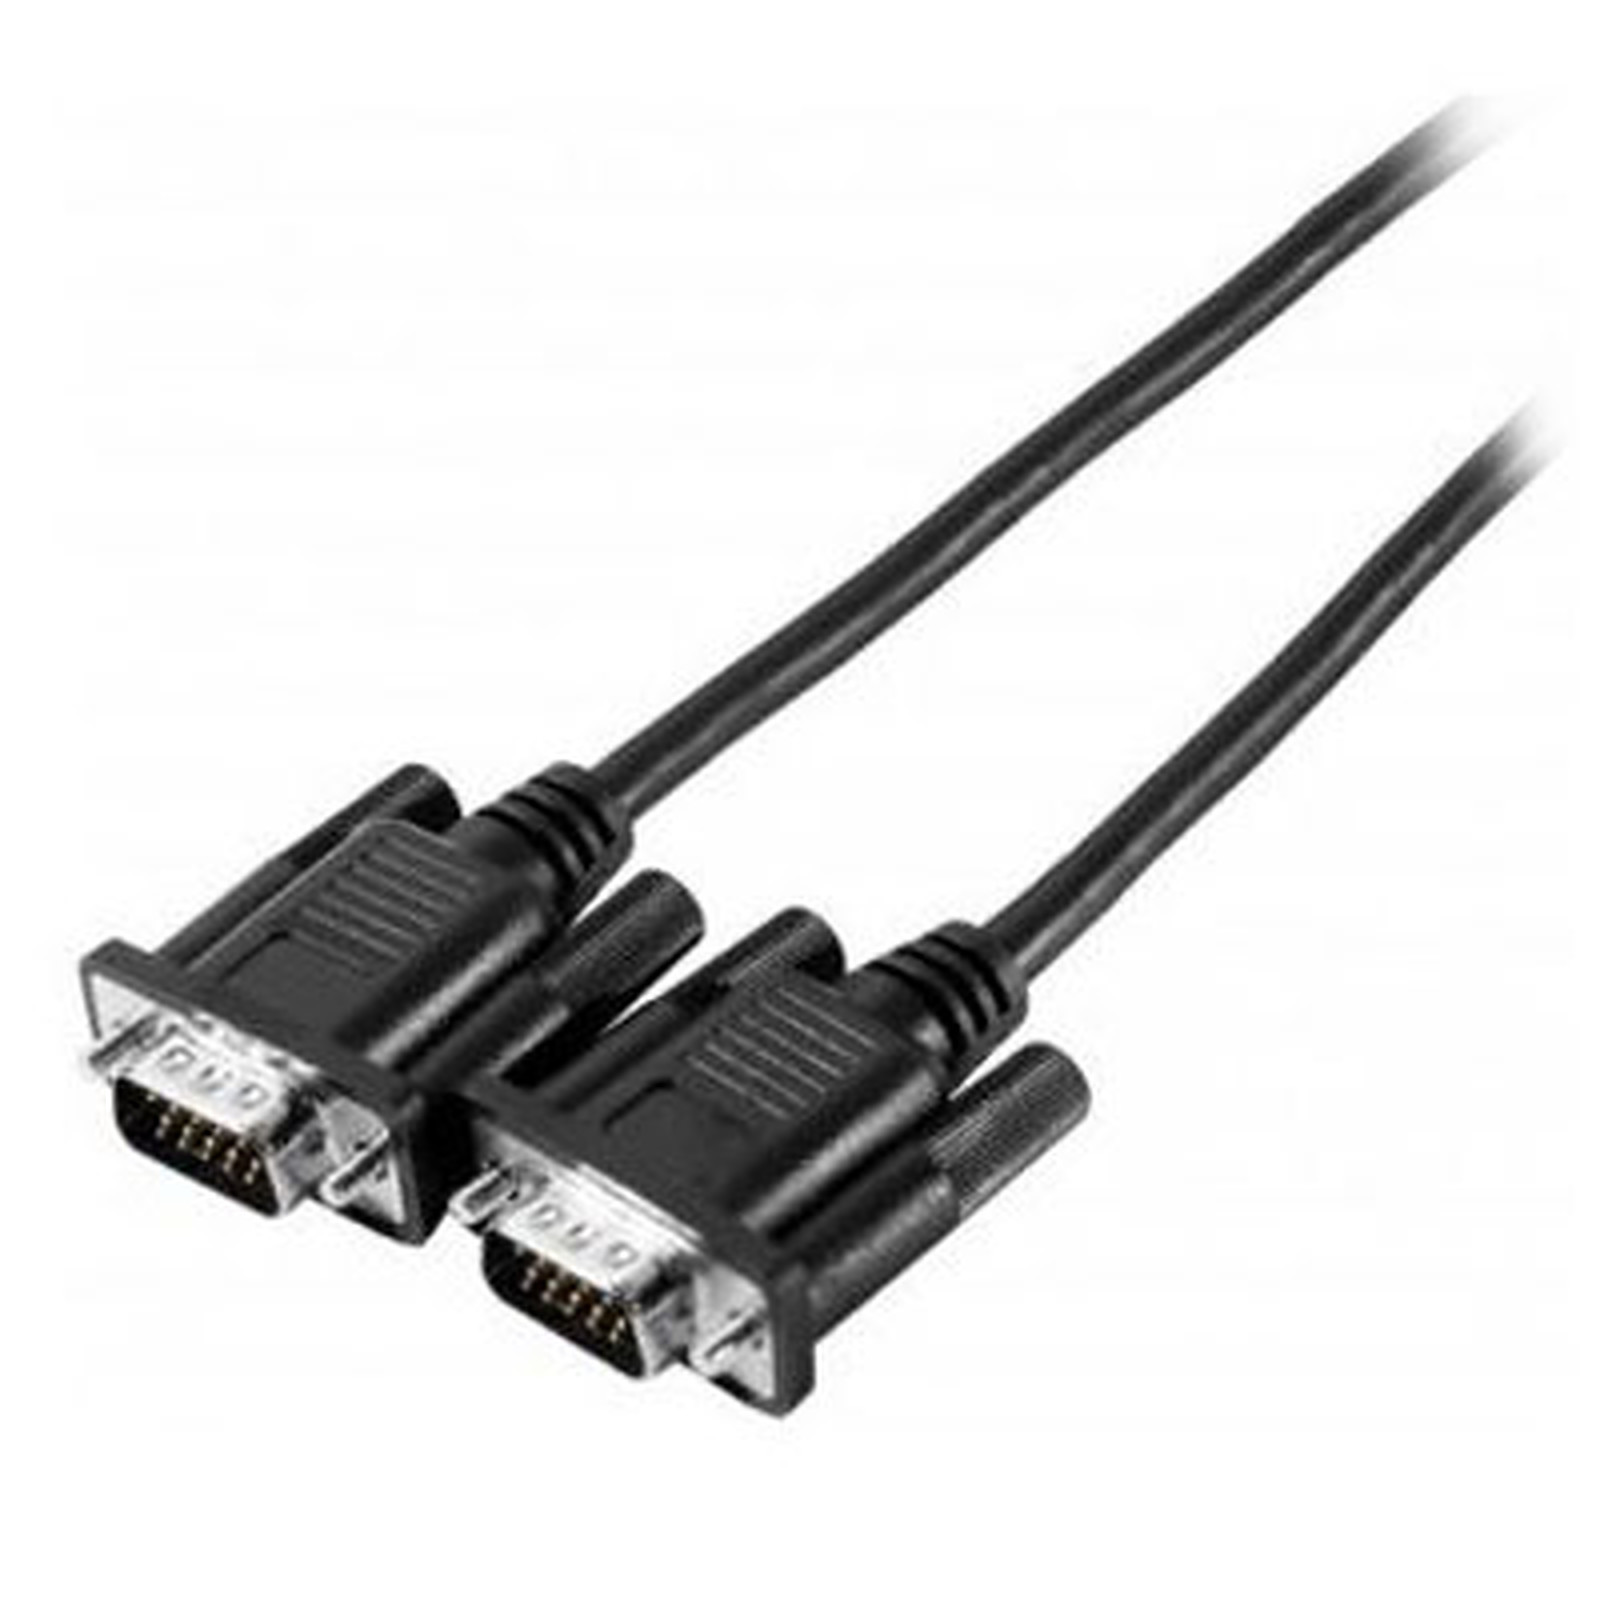 Cable VGA male / male (1.8 mètre) - VGA Generique